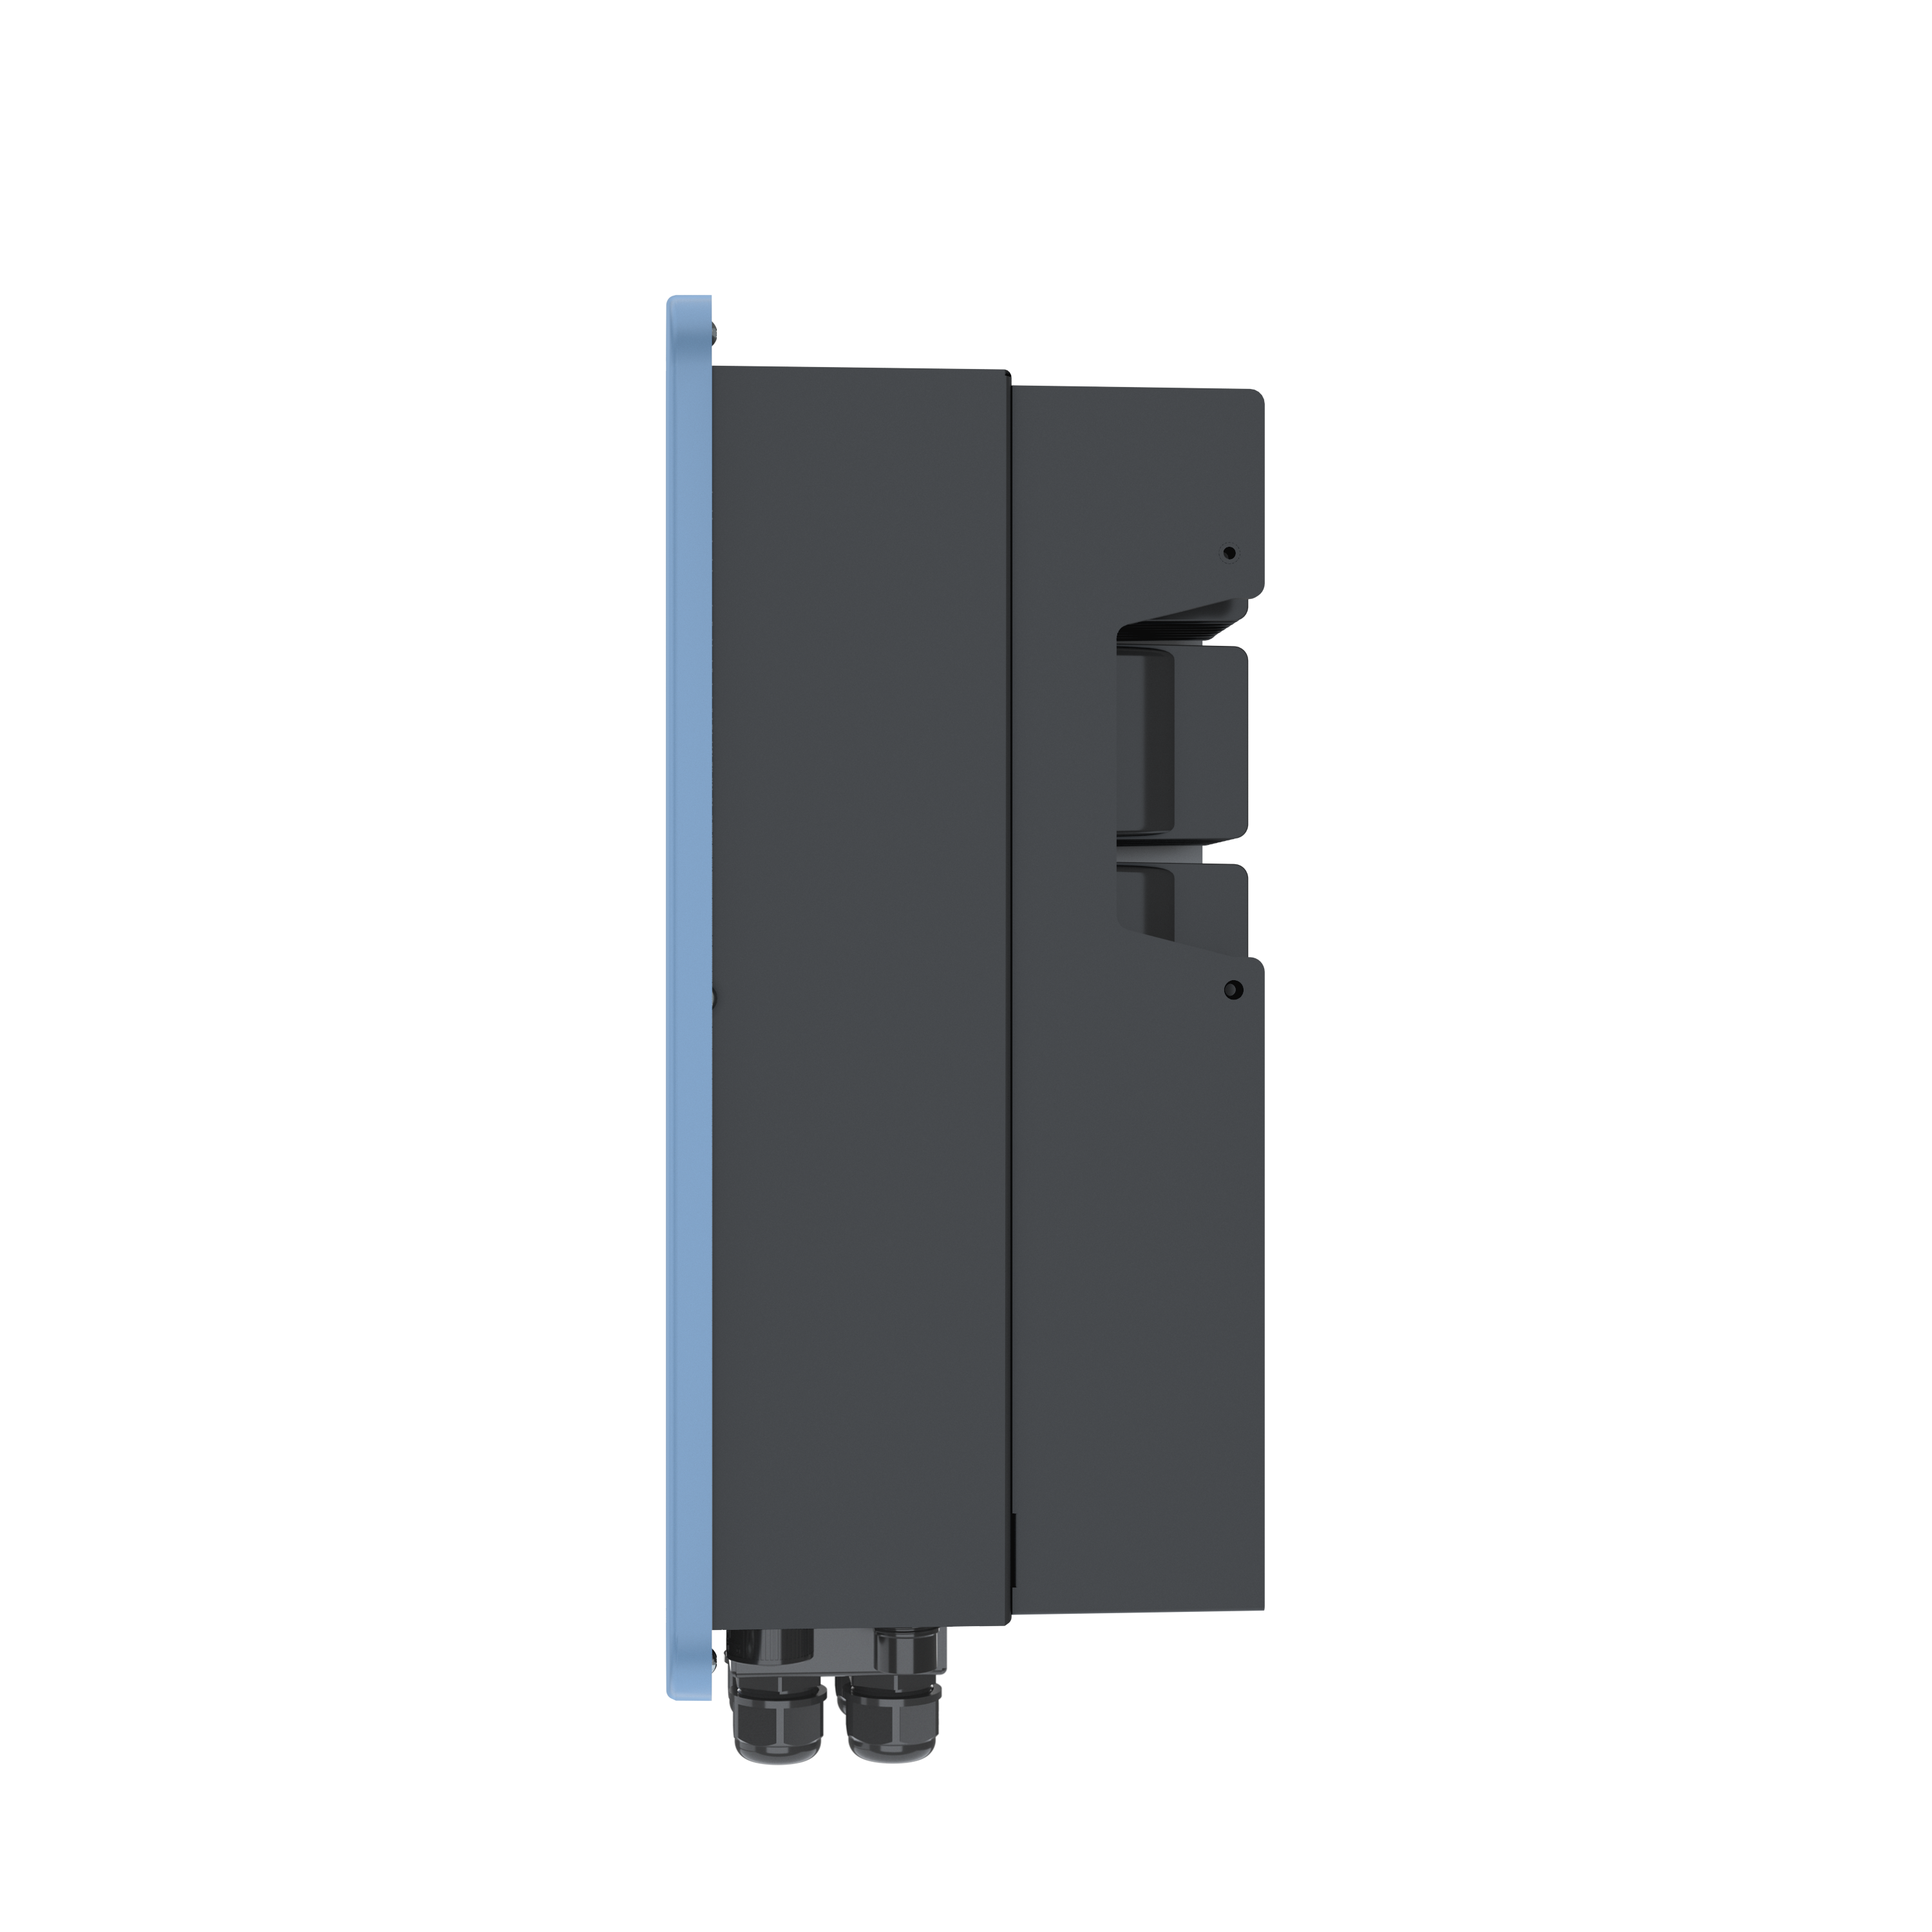 Solplanet - 8,0 kW dreiphasiger Hybrid-Wechselrichter, 2 MPPT, inkl. Wifi Stick, kompatibel zu HV Heimspeicher